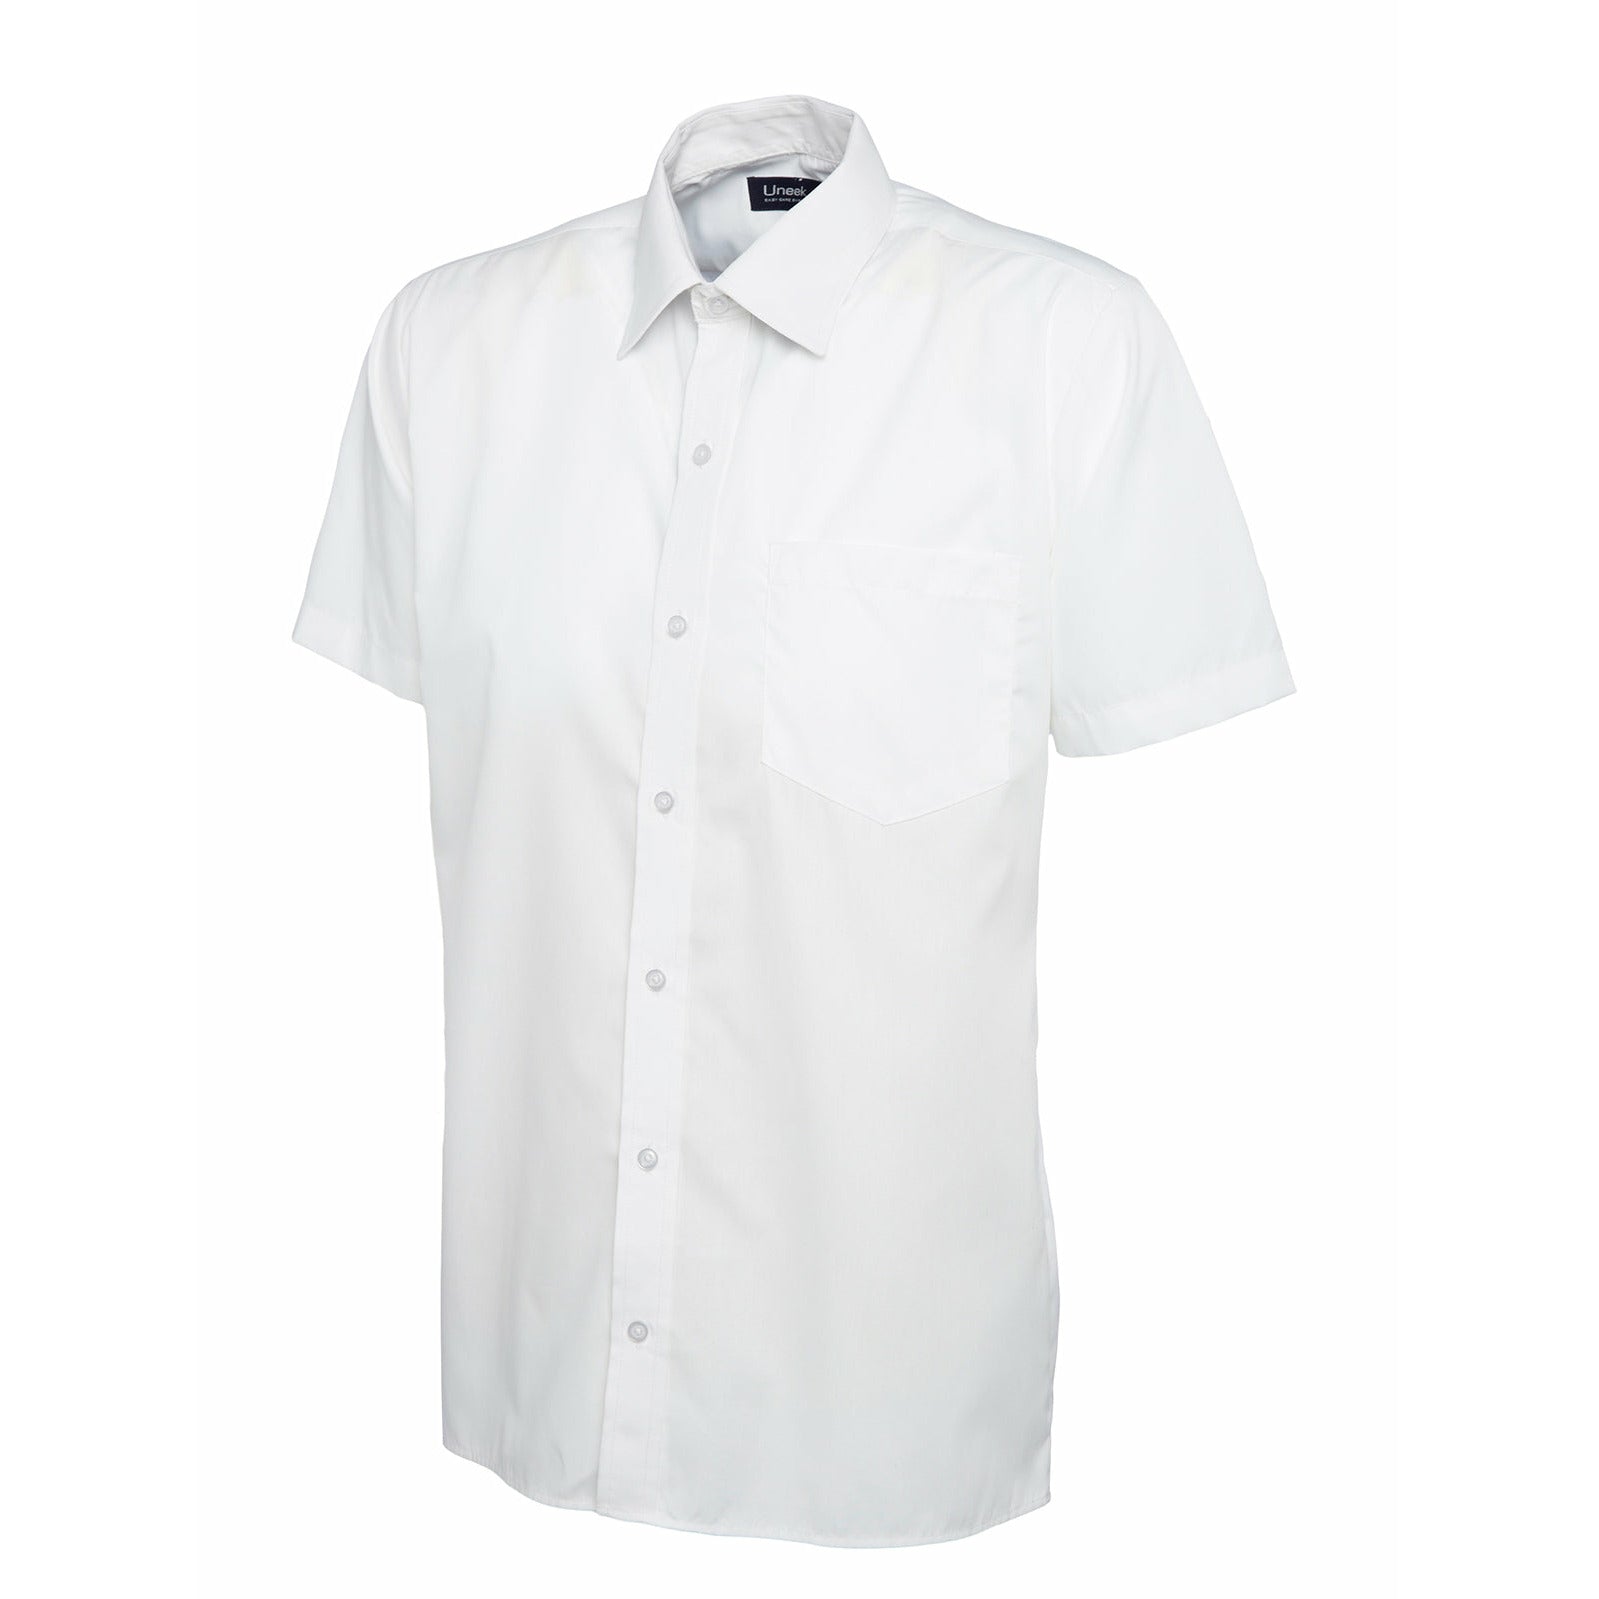 Mens Poplin Half Sleeve Shirt (17 - 19.5) - White